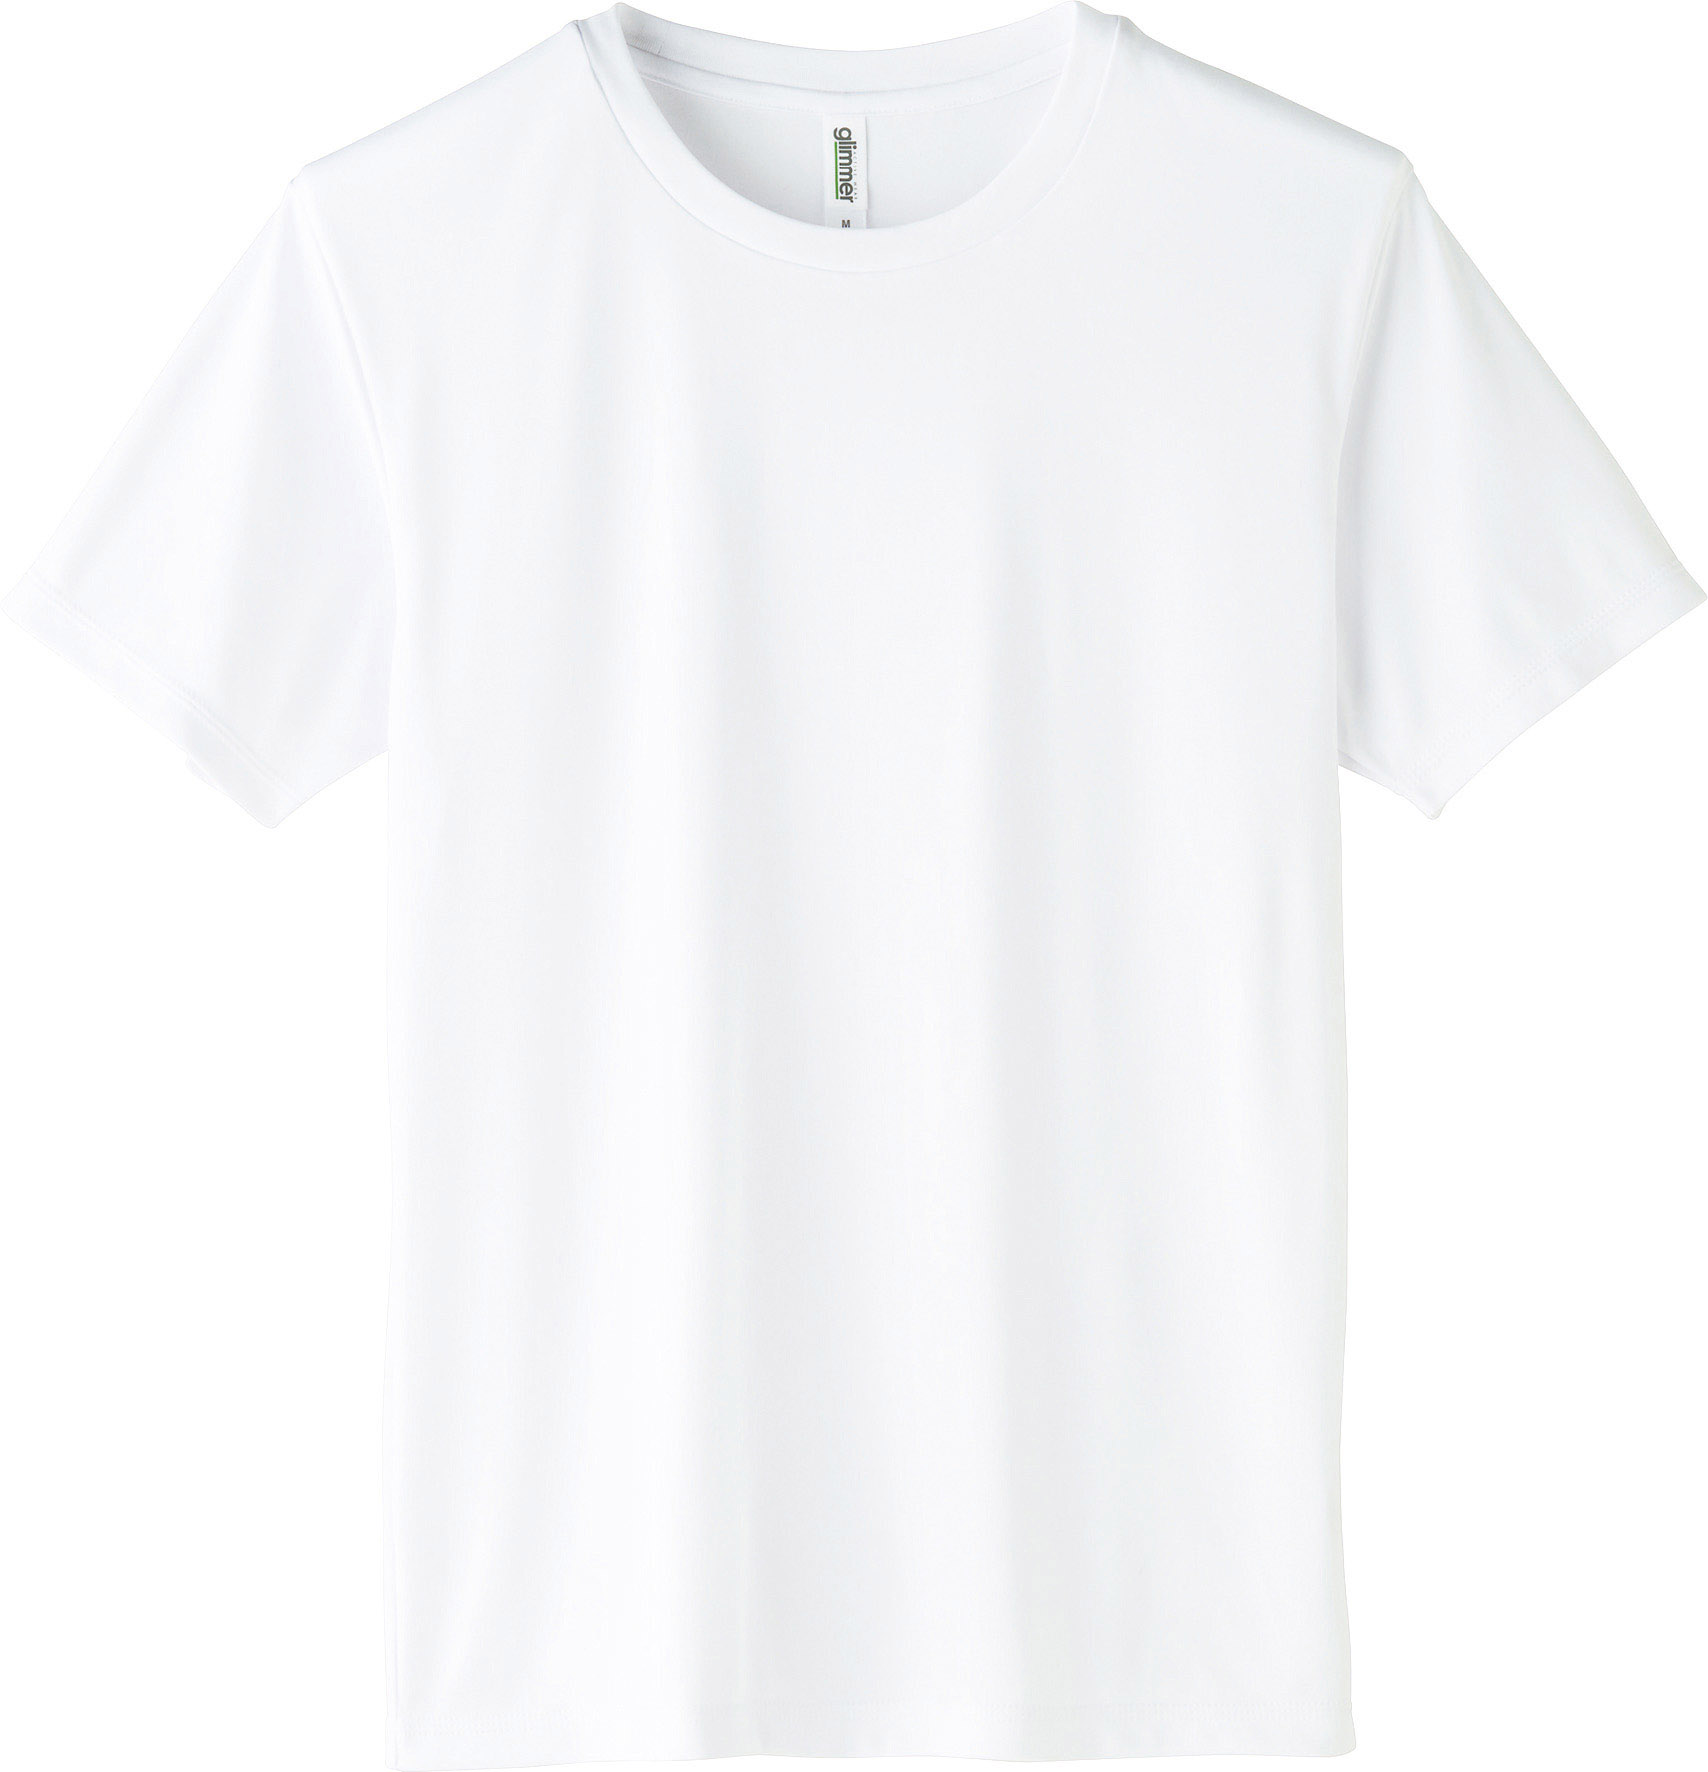 ドライ 半袖 Tシャツ 3.5オンス 薄手 UVカット グリマー glimmer 00350 AIT...